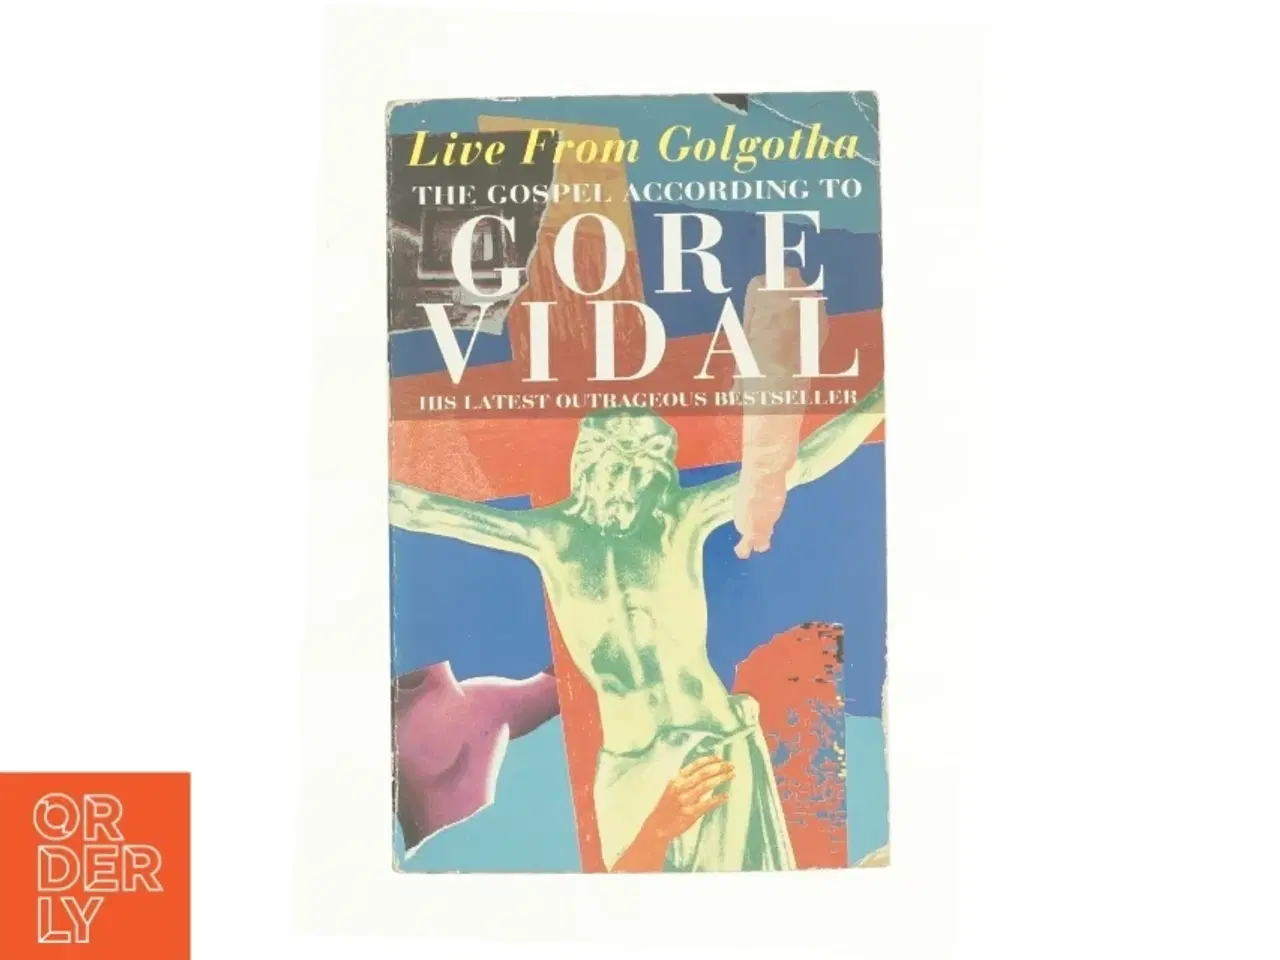 Billede 1 - Live from Golgotha af Vidal, Gore (Bog)